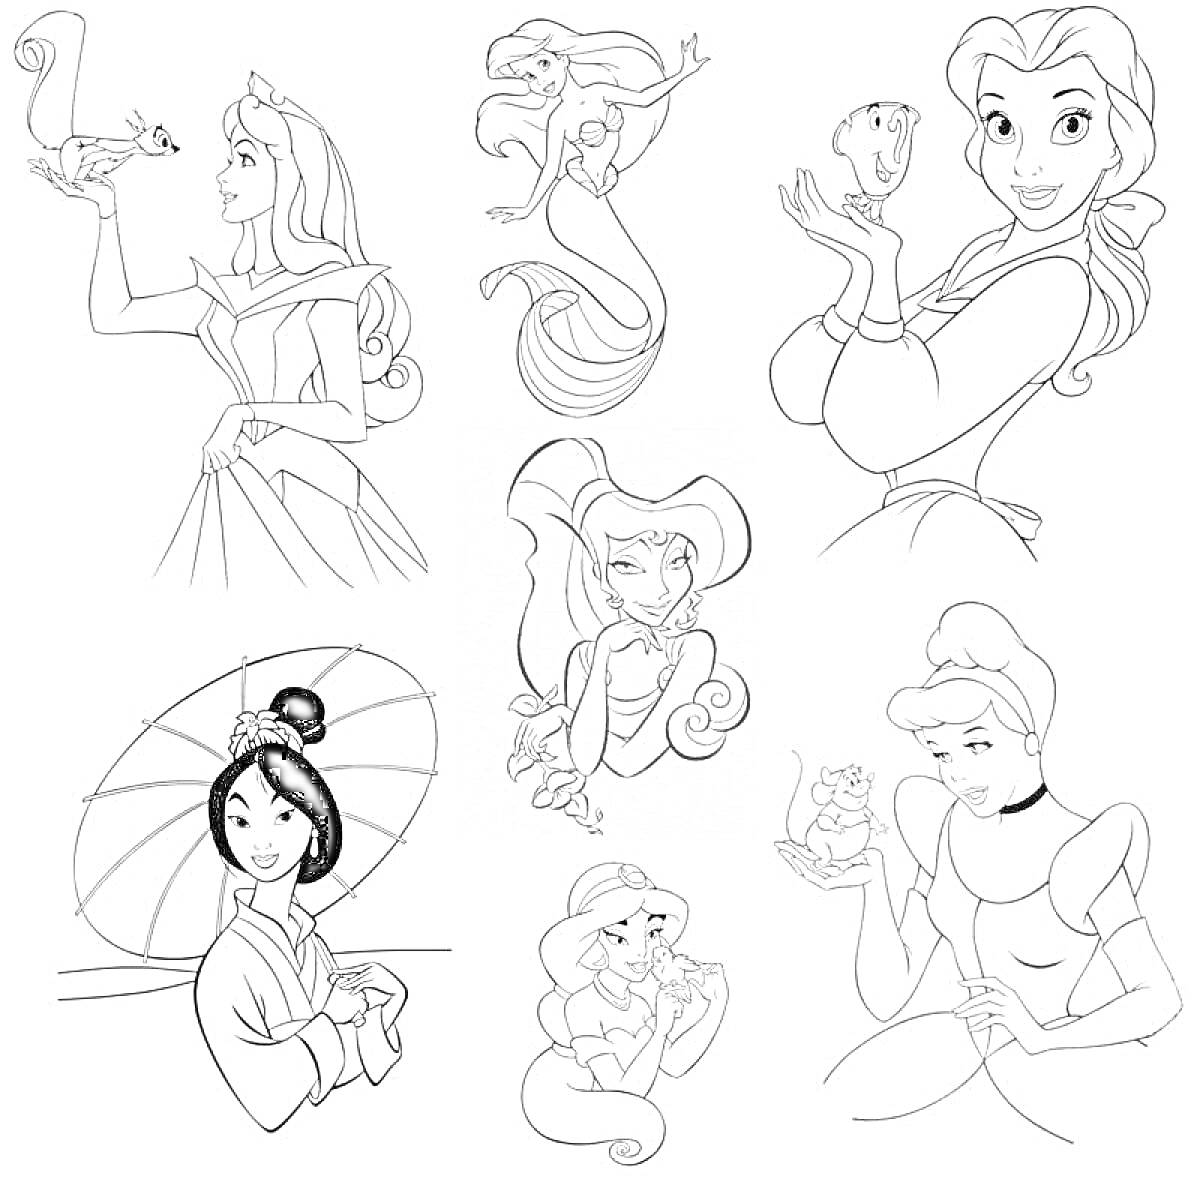 Принцессы Дисней. Принцессы Аврора, Ариэль в двух образах (русалка и с хвостом), Бель с чашкой, Мулан с веером, Ариэль с ракушкой, Золушка